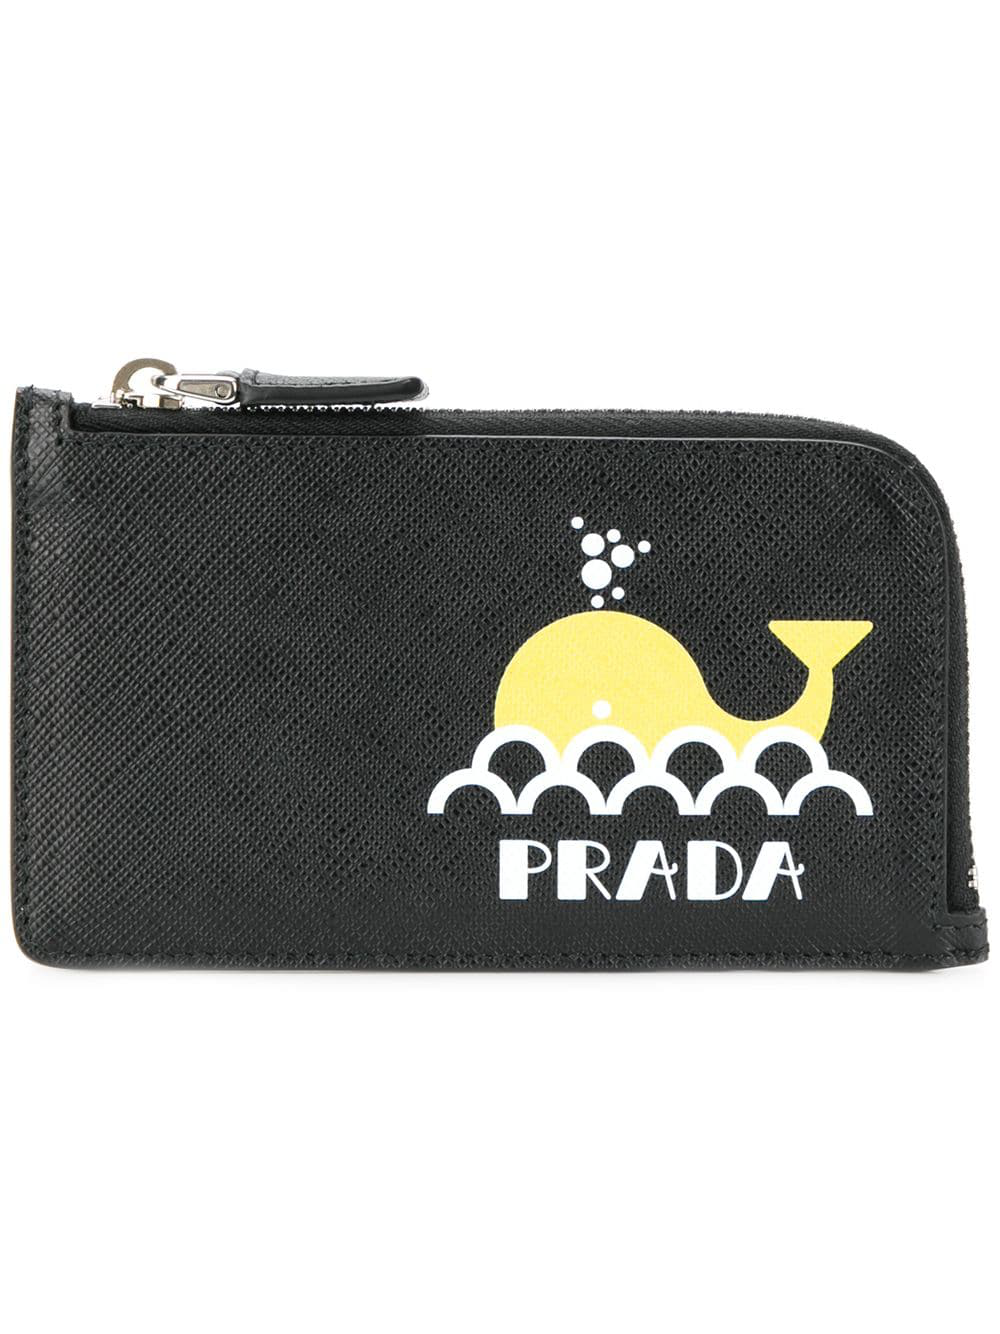 Prada Printed Whale Wallet - Black 